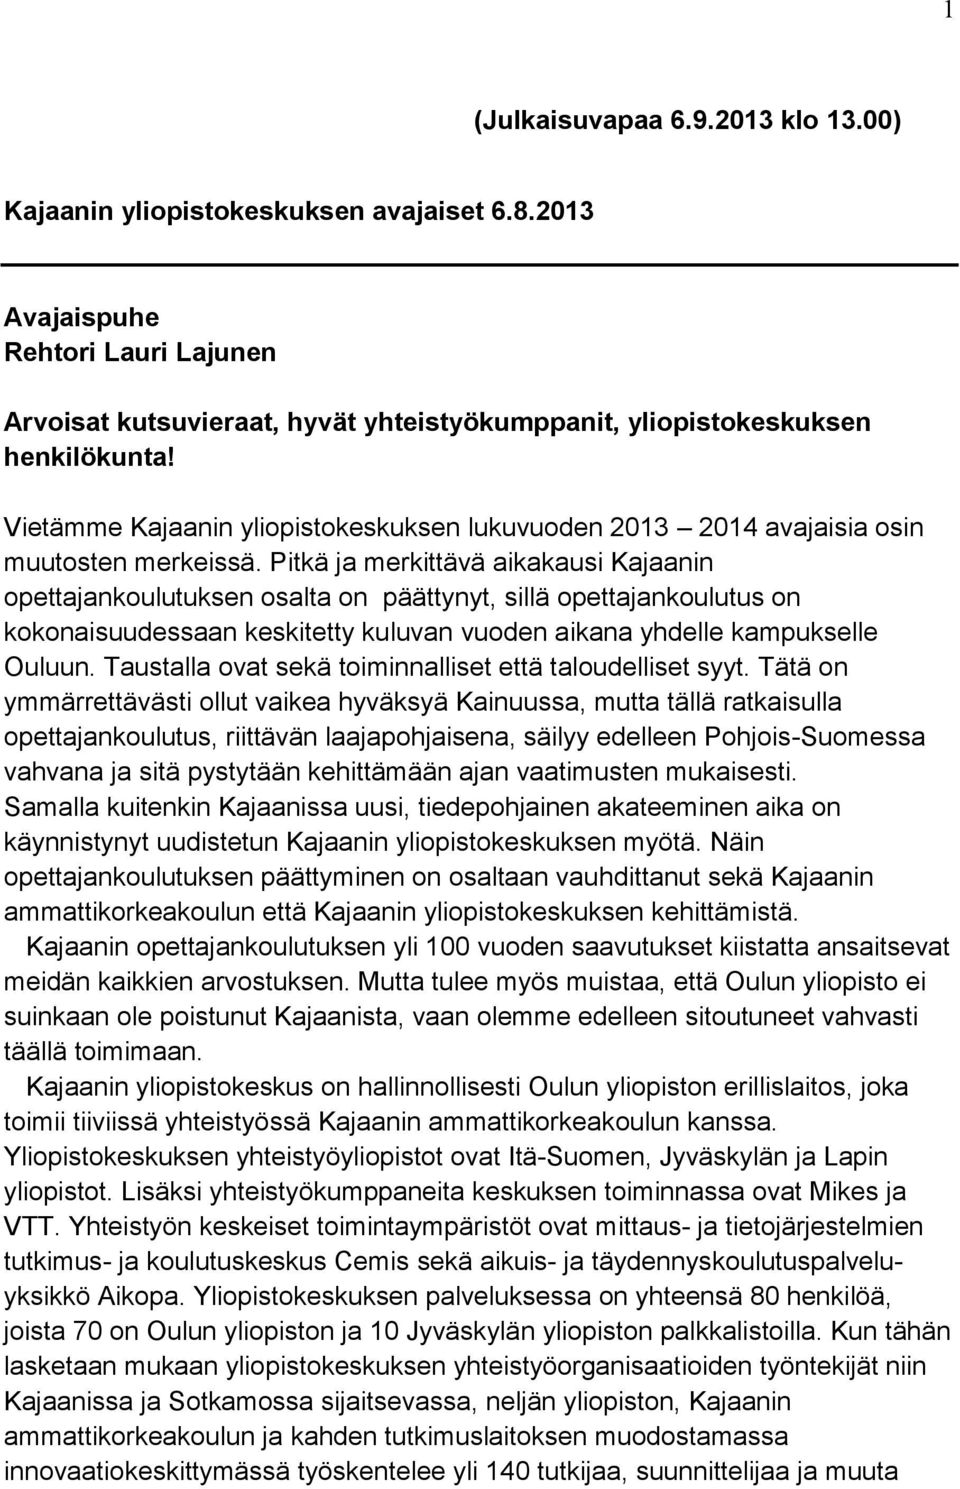 Pitkä ja merkittävä aikakausi Kajaanin opettajankoulutuksen osalta on päättynyt, sillä opettajankoulutus on kokonaisuudessaan keskitetty kuluvan vuoden aikana yhdelle kampukselle Ouluun.